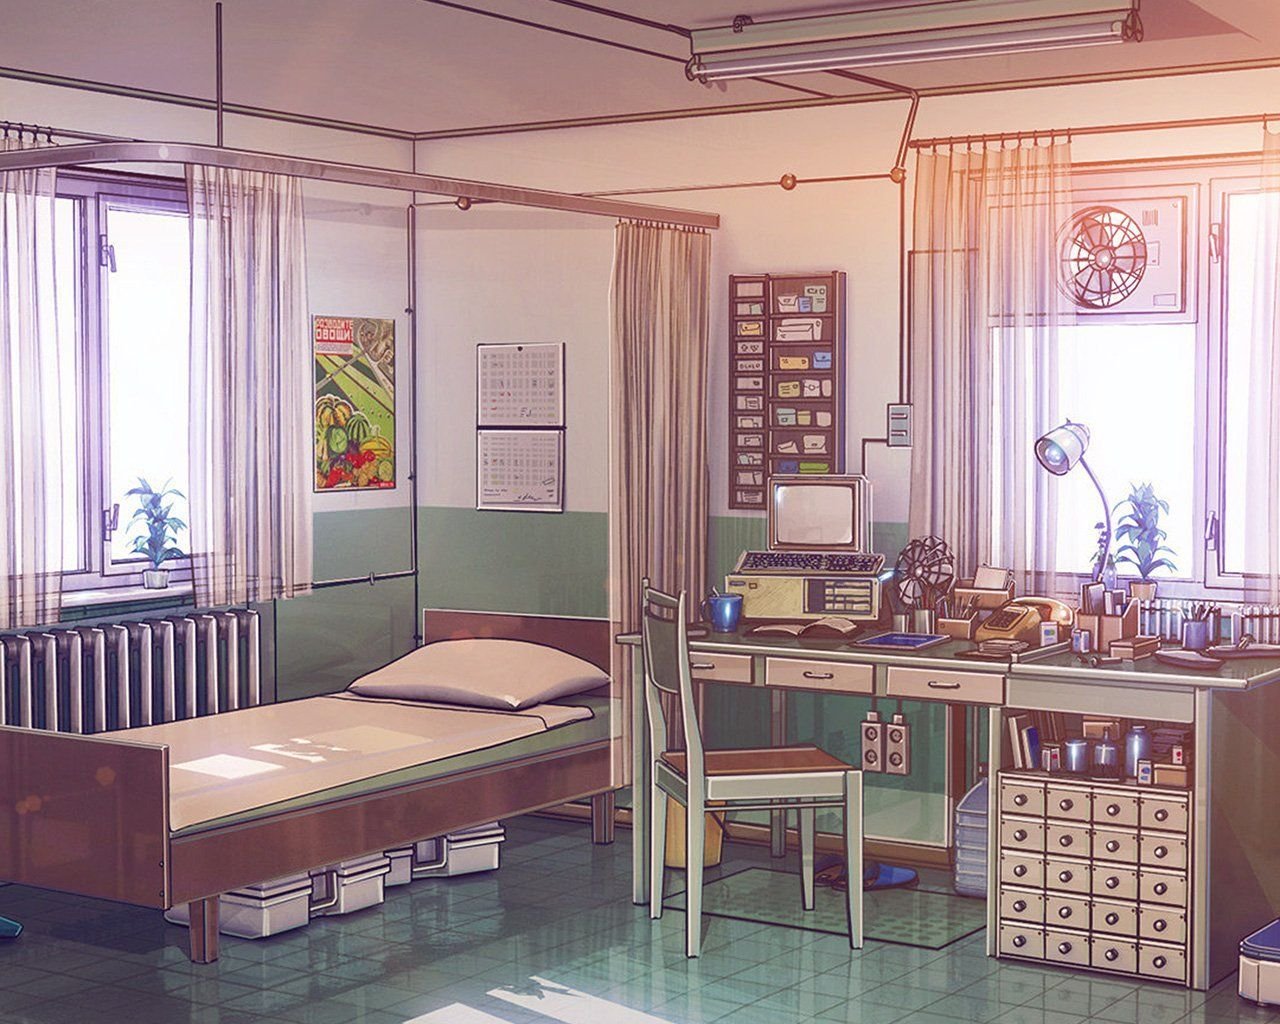 Больничная палата аниме - картинки, фото и рисунки.